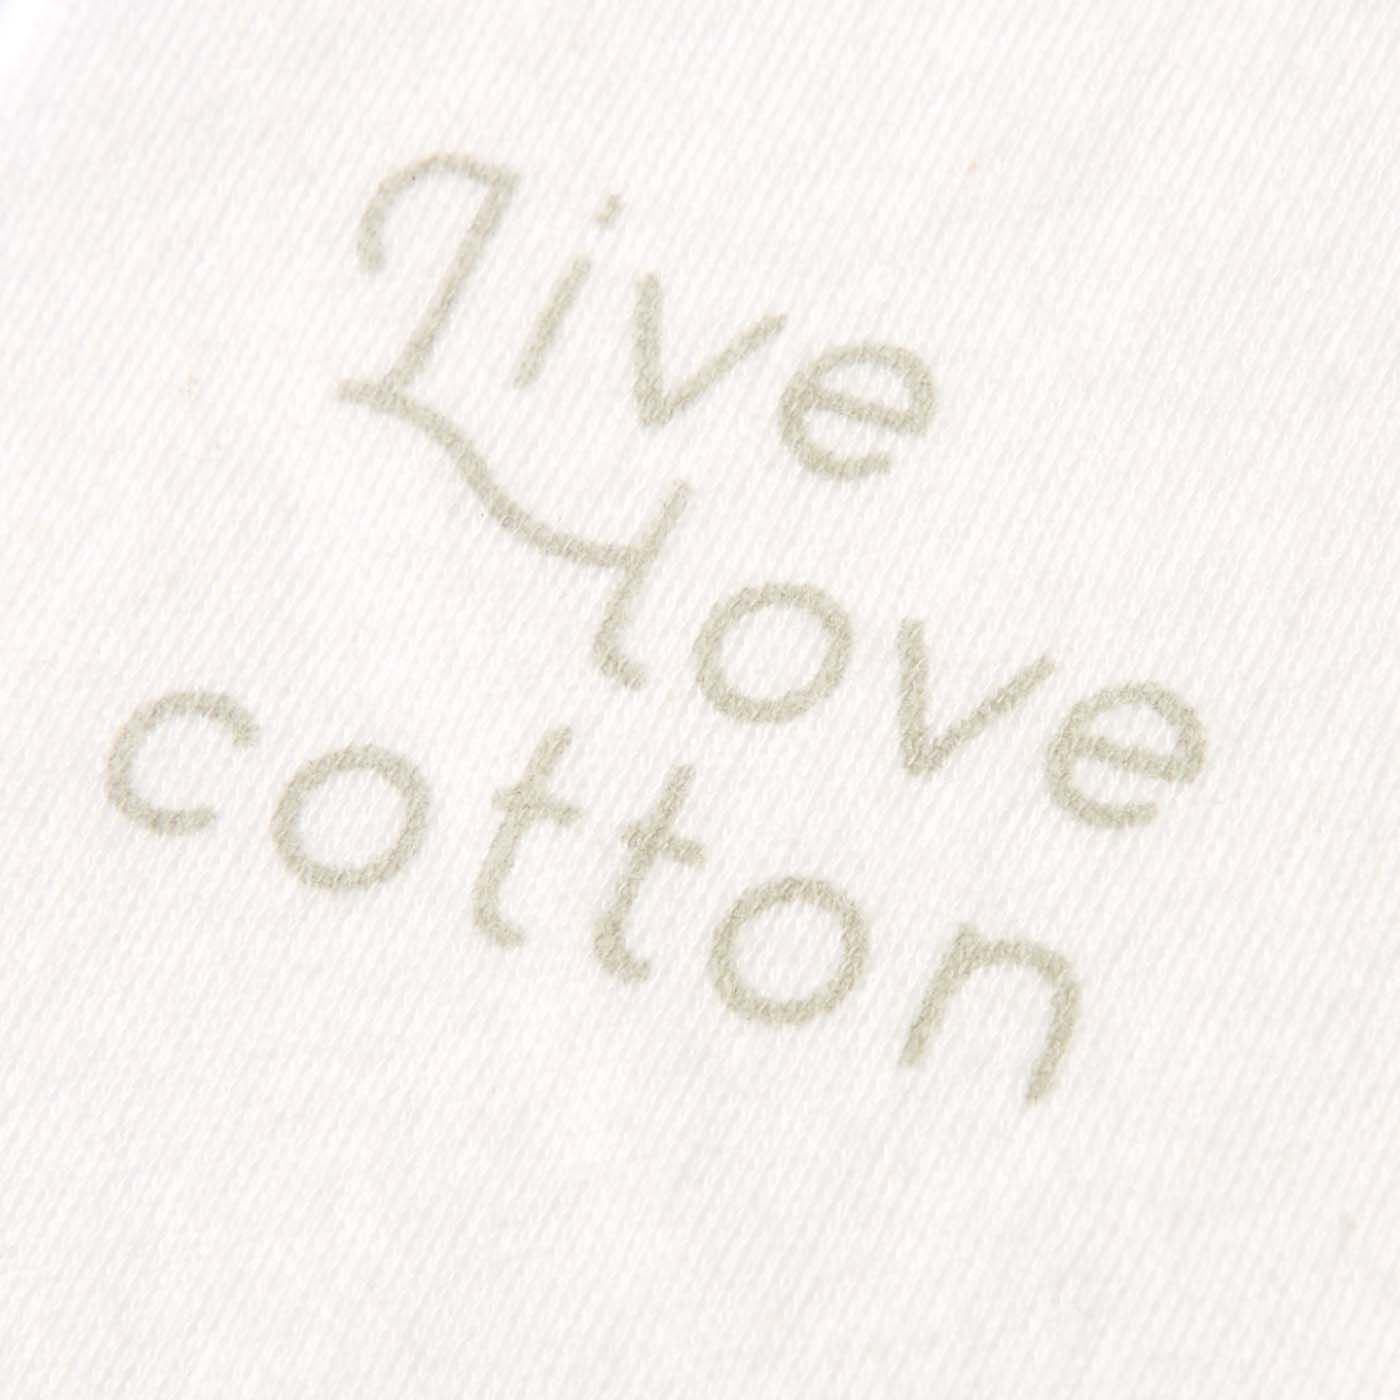 el:ment|Live love cottonプロジェクト　el:ment×Yuko Yamamoto　平和を願う草花ブーケ しなやかオーガニックコットン スリット入りロングTシャツの会|背面内側には、Live love cottonのロゴ入り。